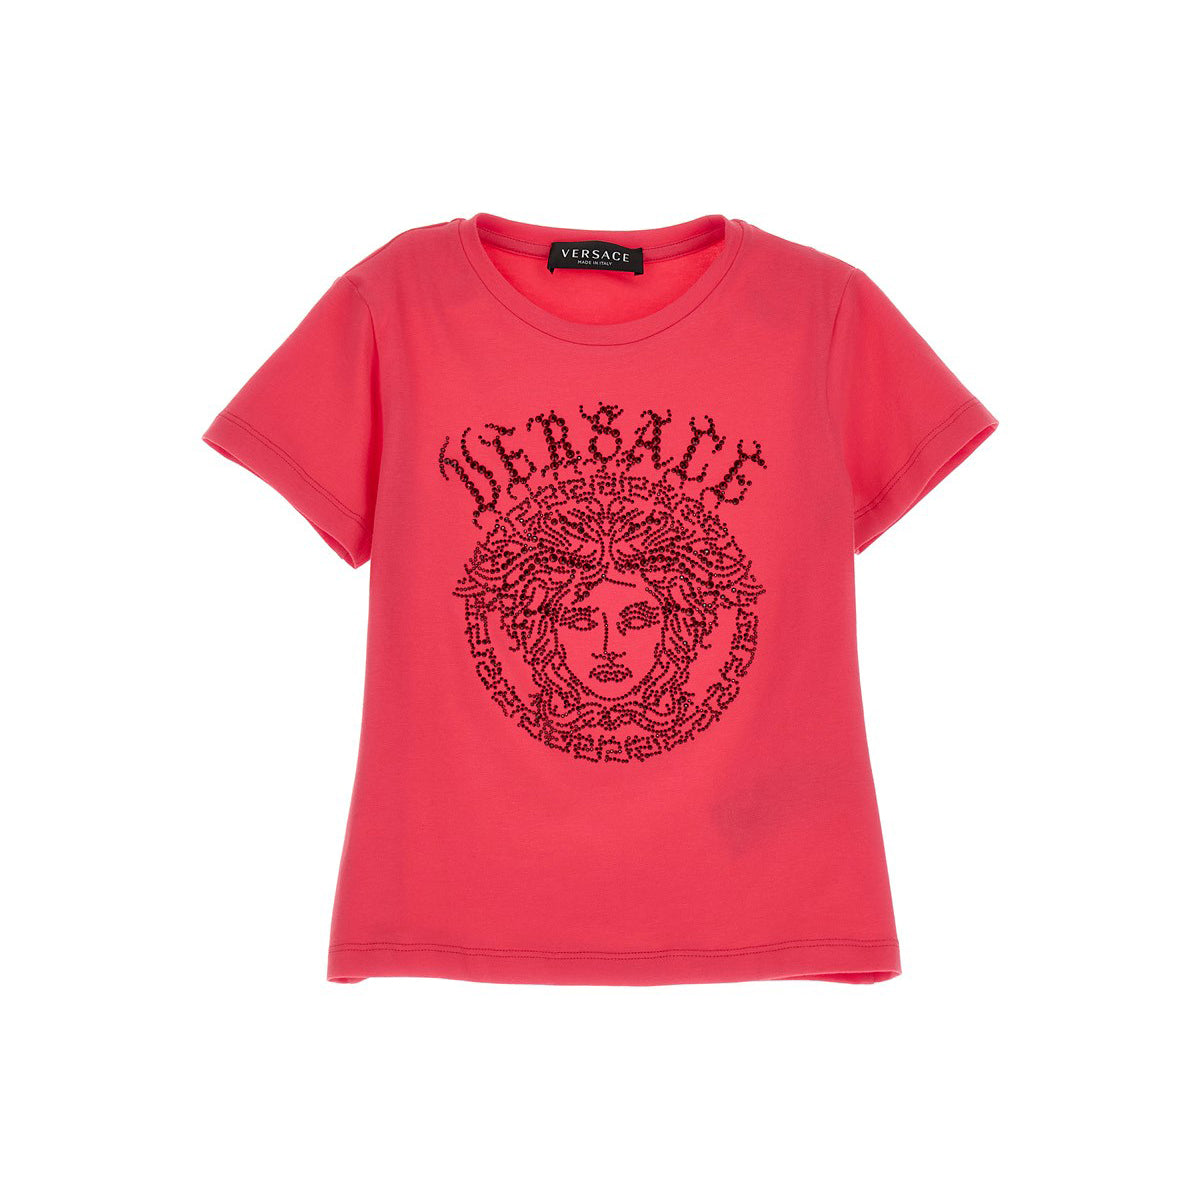 VERSACE KIDS 'Medusa' T-shirt